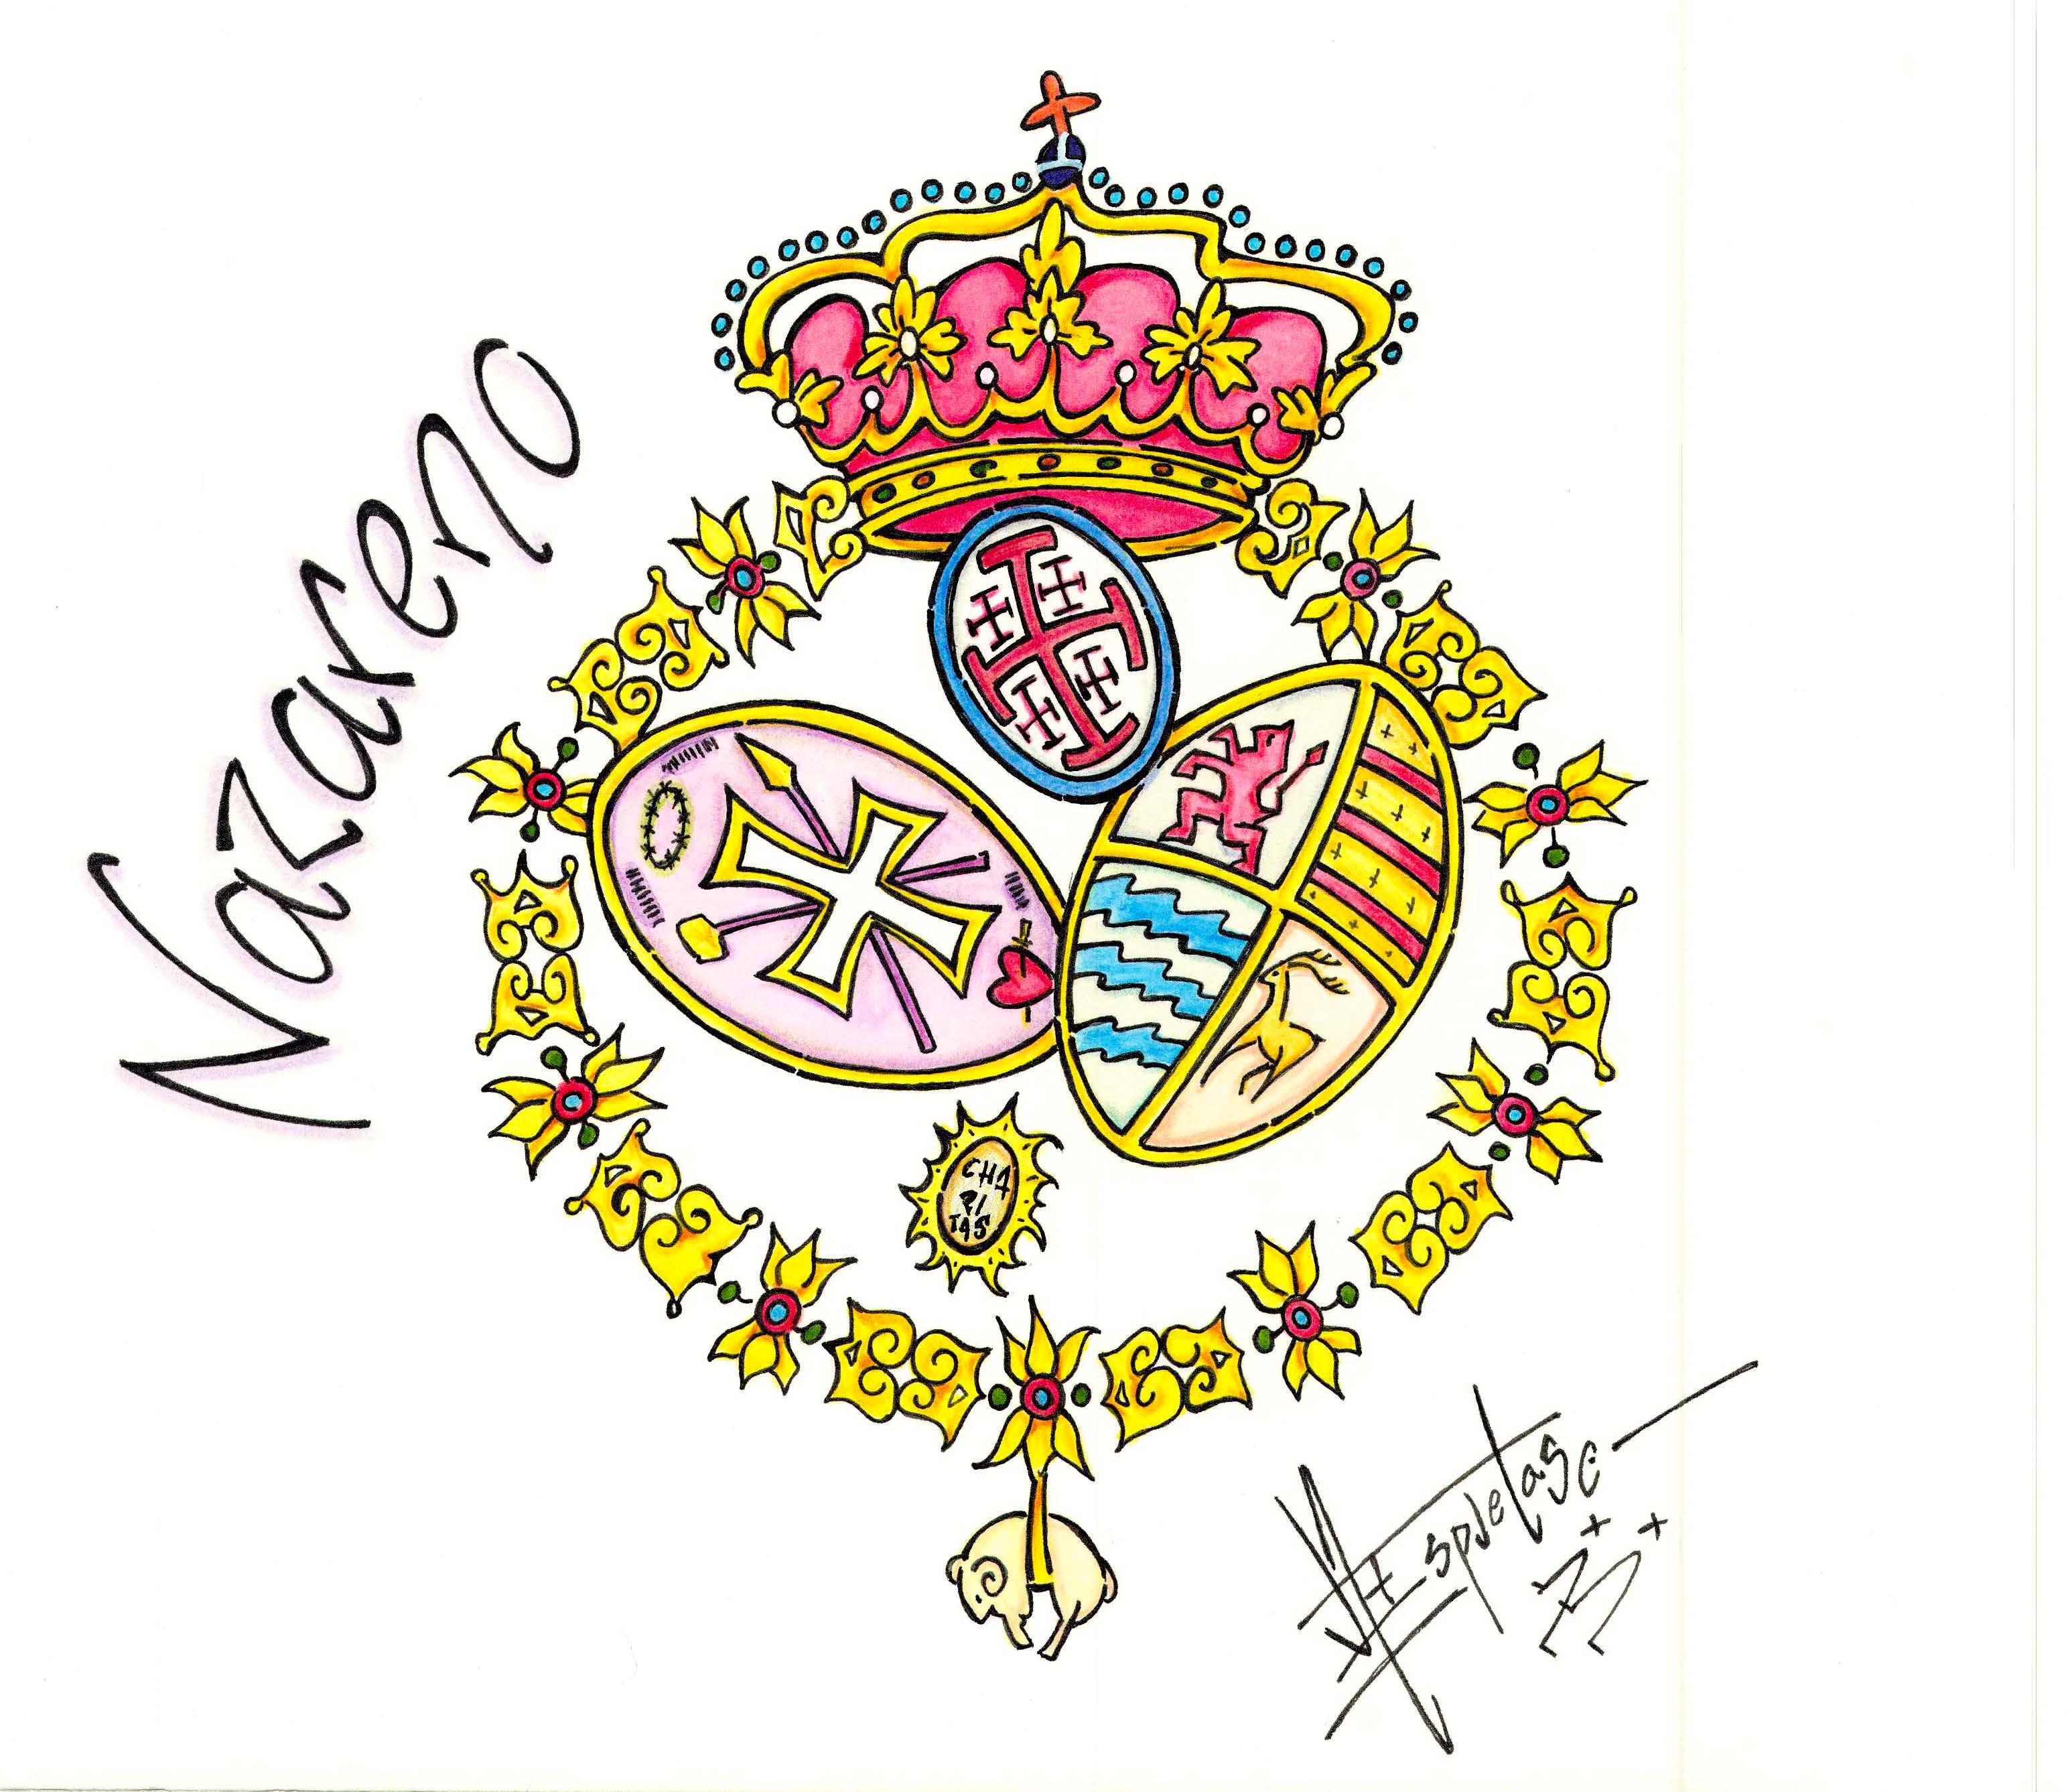 Escudo de la Hermandad del Nazareno de Huelva